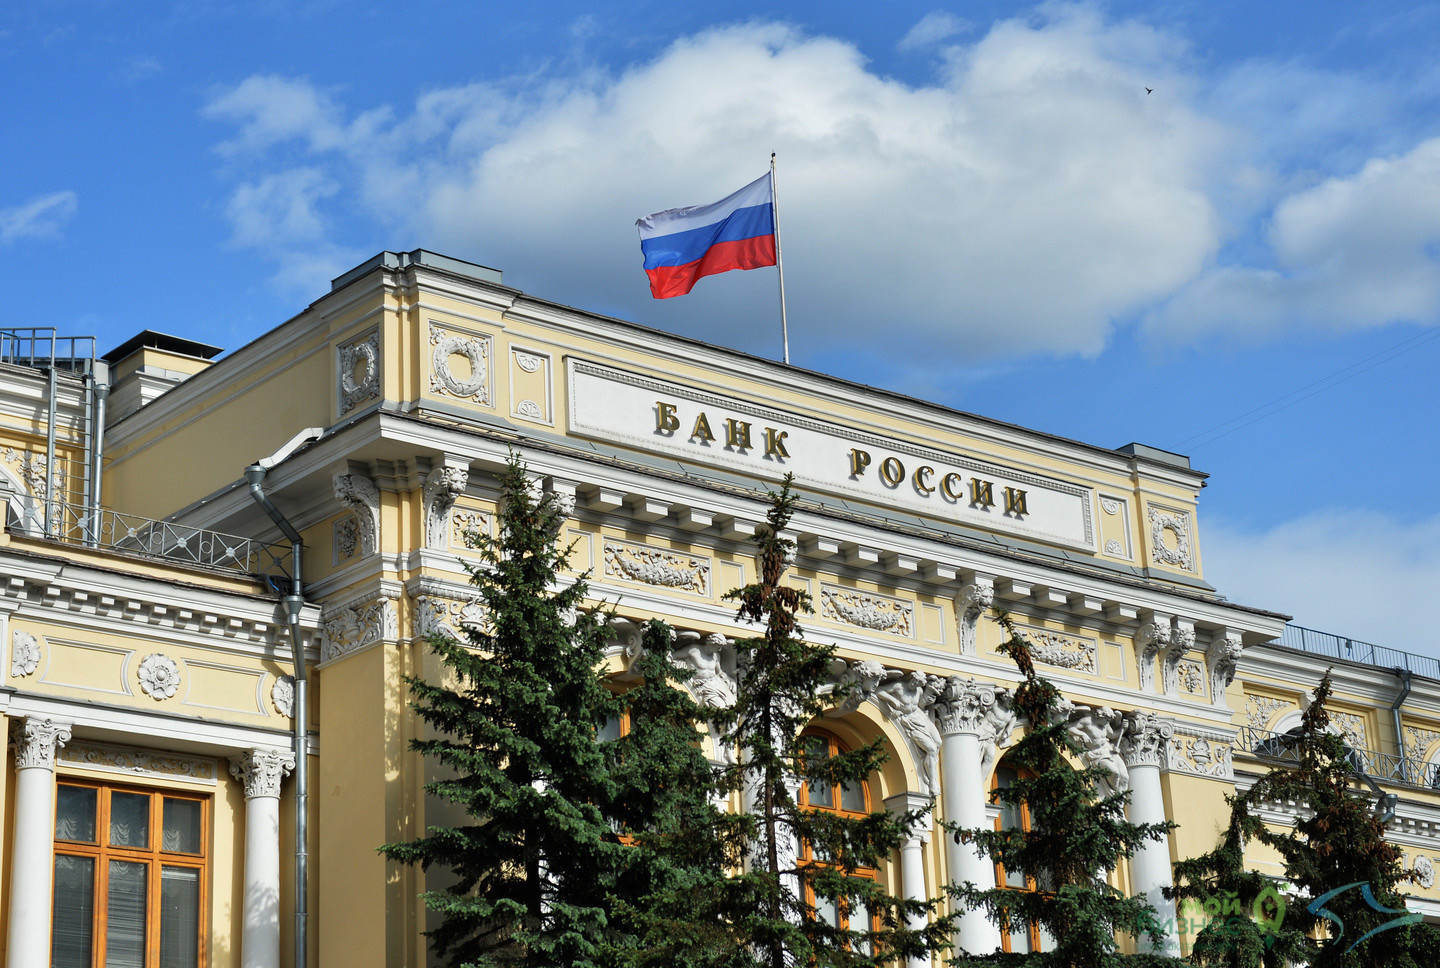 Опрос Банка России